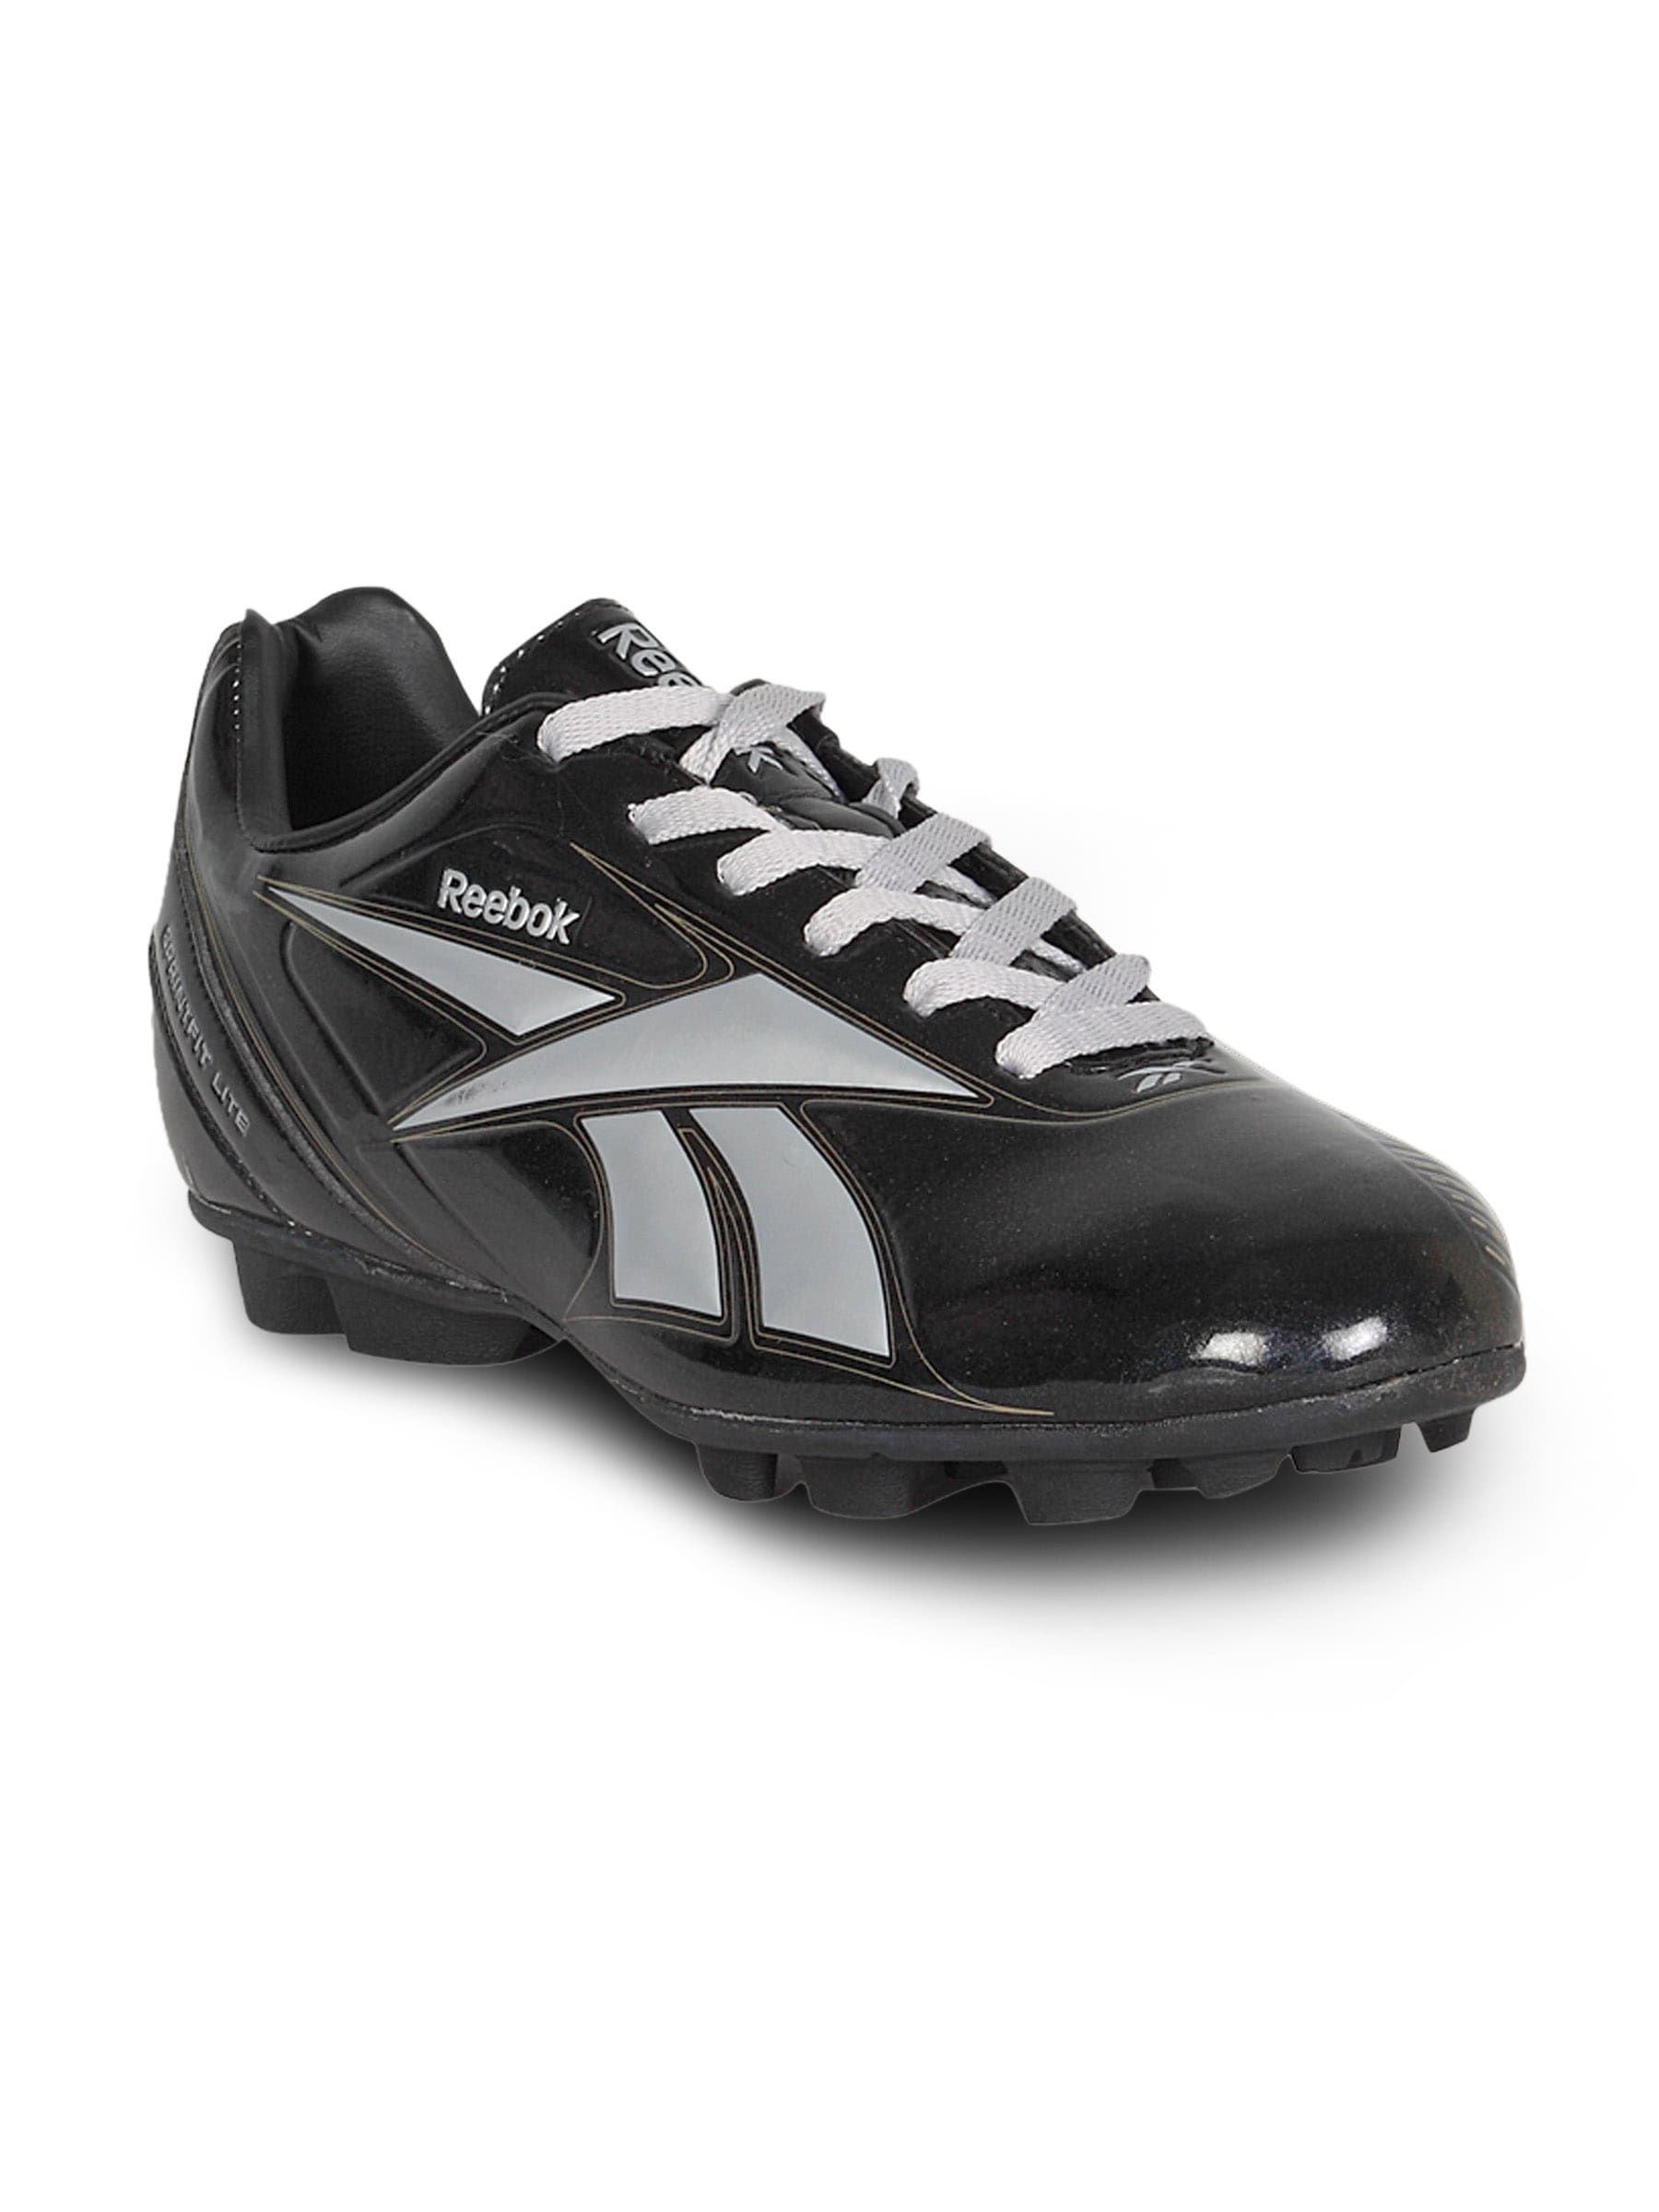 Reebok Men's Sprint Fit Lite LP Black Silver Shoe